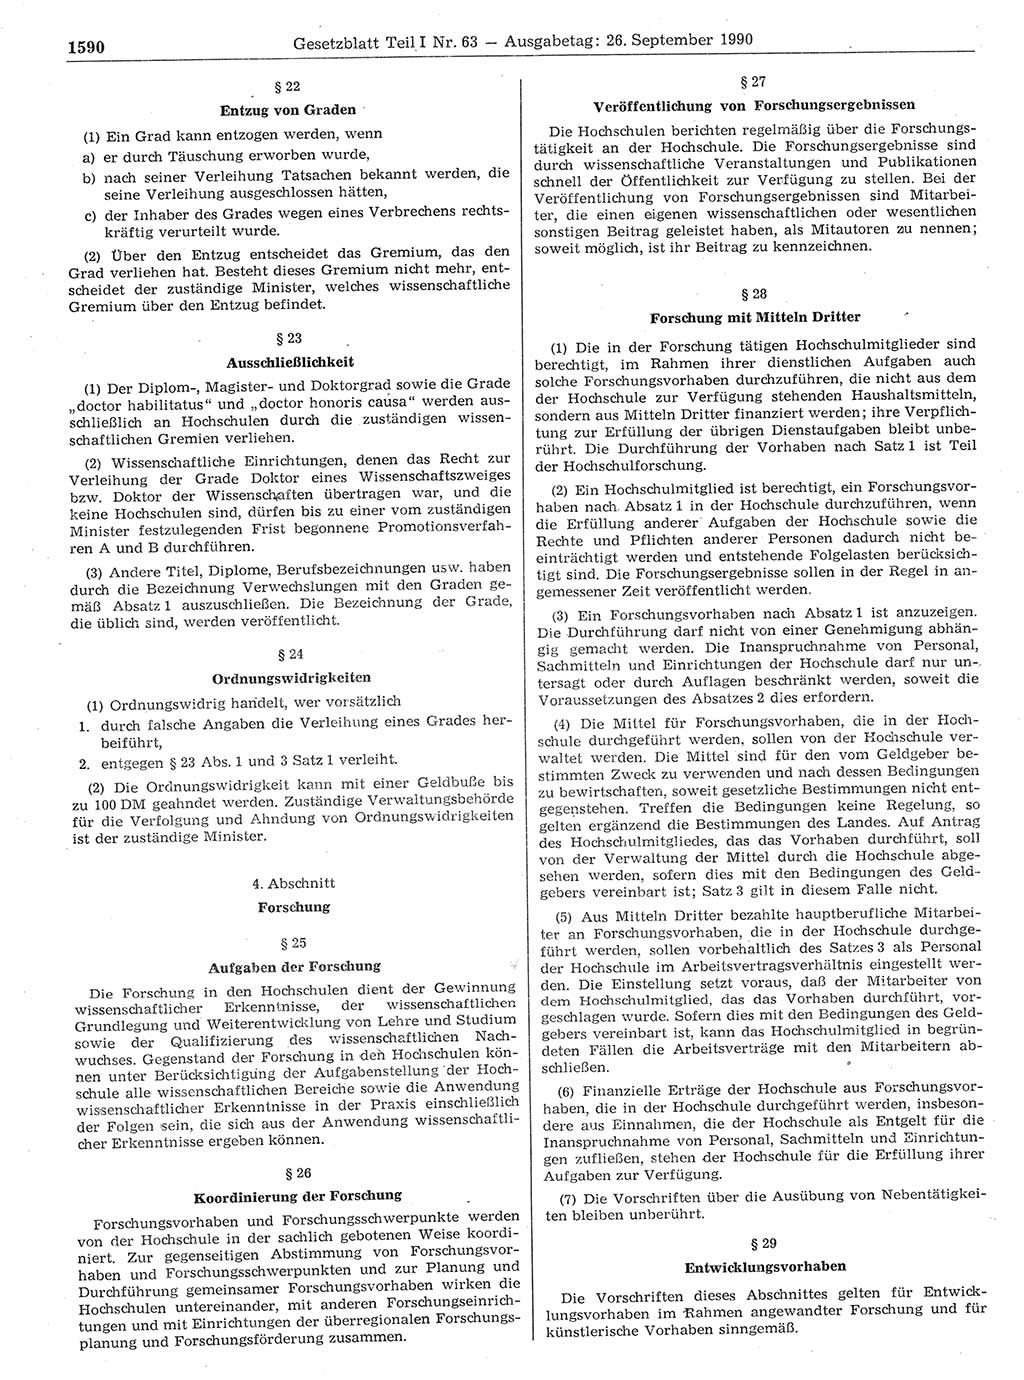 Gesetzblatt (GBl.) der Deutschen Demokratischen Republik (DDR) Teil Ⅰ 1990, Seite 1590 (GBl. DDR Ⅰ 1990, S. 1590)